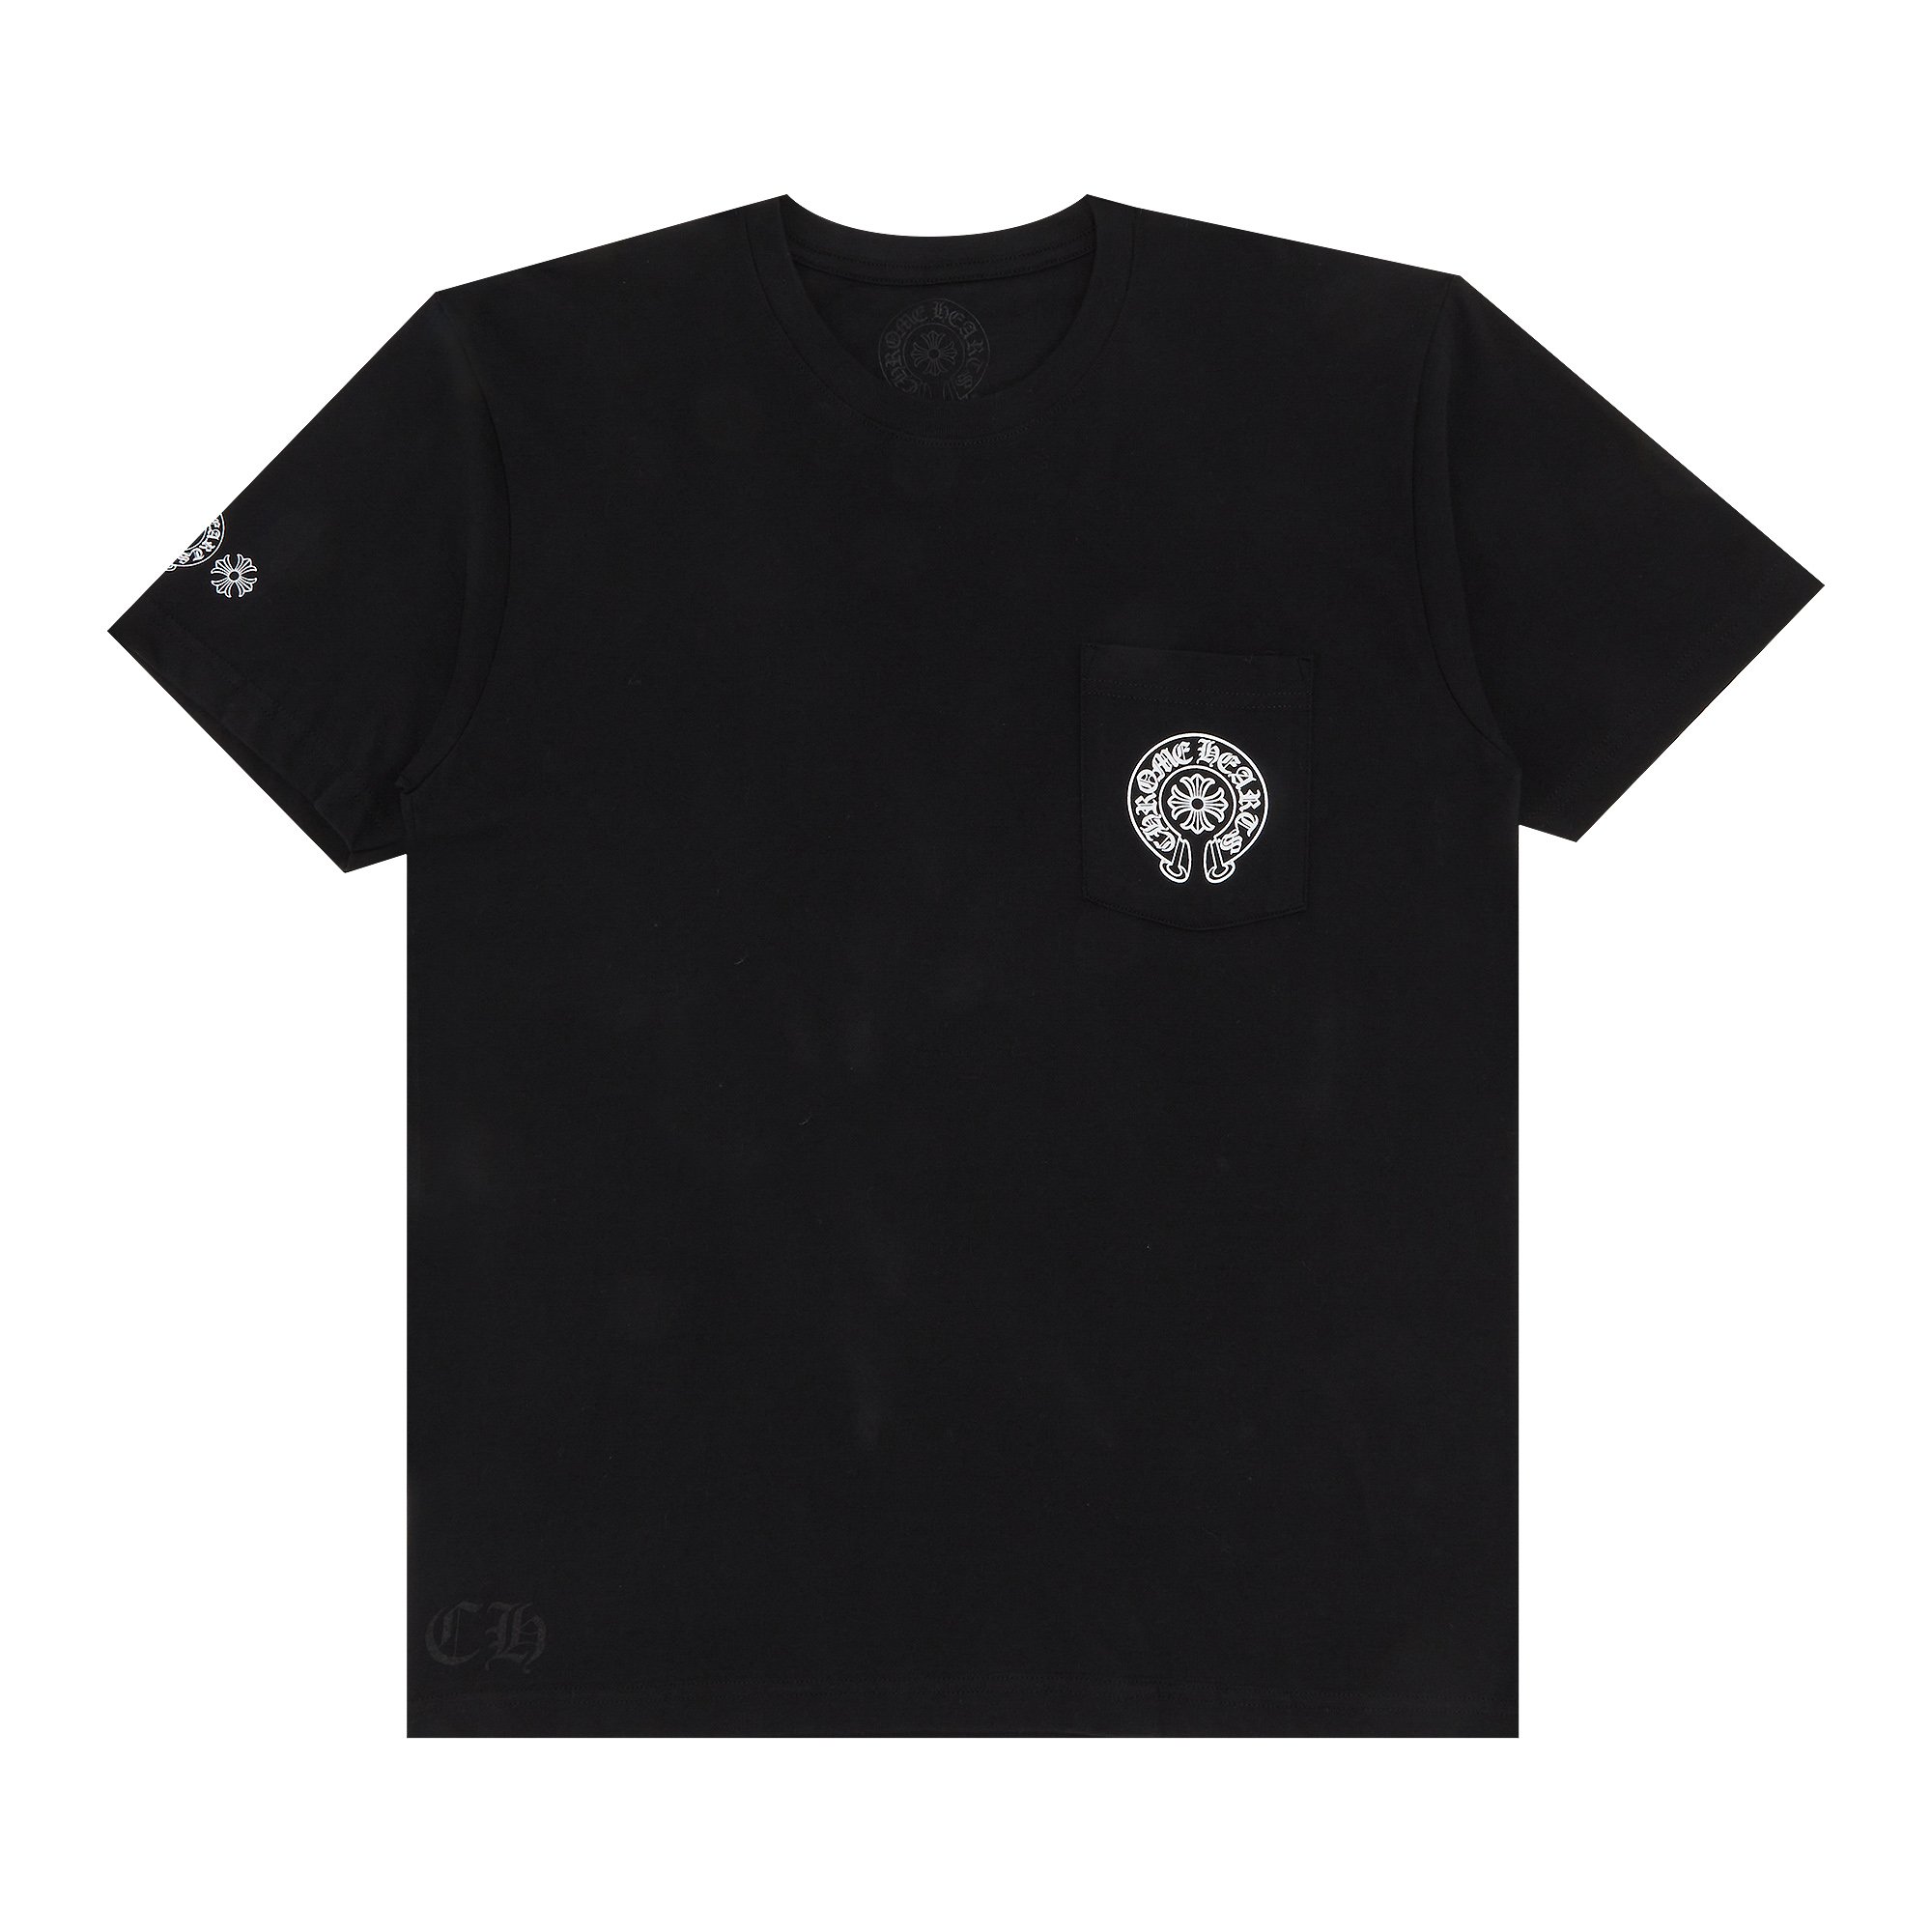 Футболка с логотипом Chrome Hearts Gradient, цвет Черный/Многоцветный футболка с карманами и логотипом chrome hearts horseshoe цвет белый